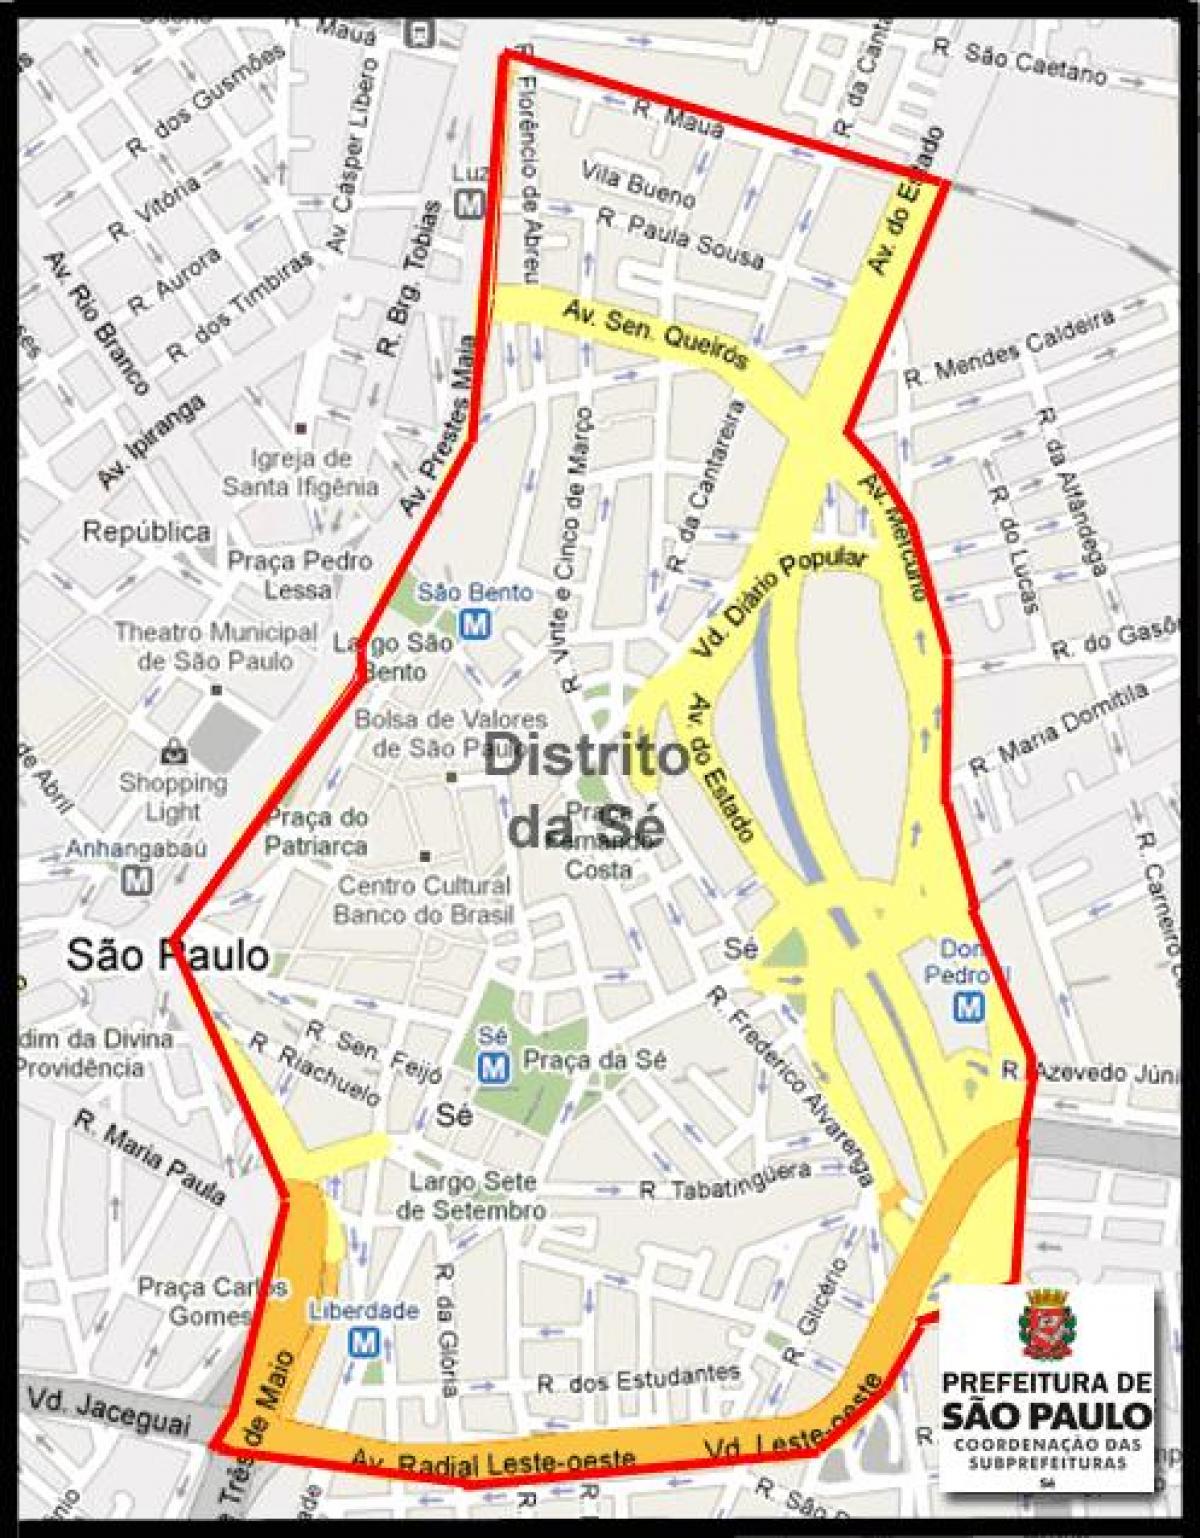 แผนที่ของ Sé São Paulo